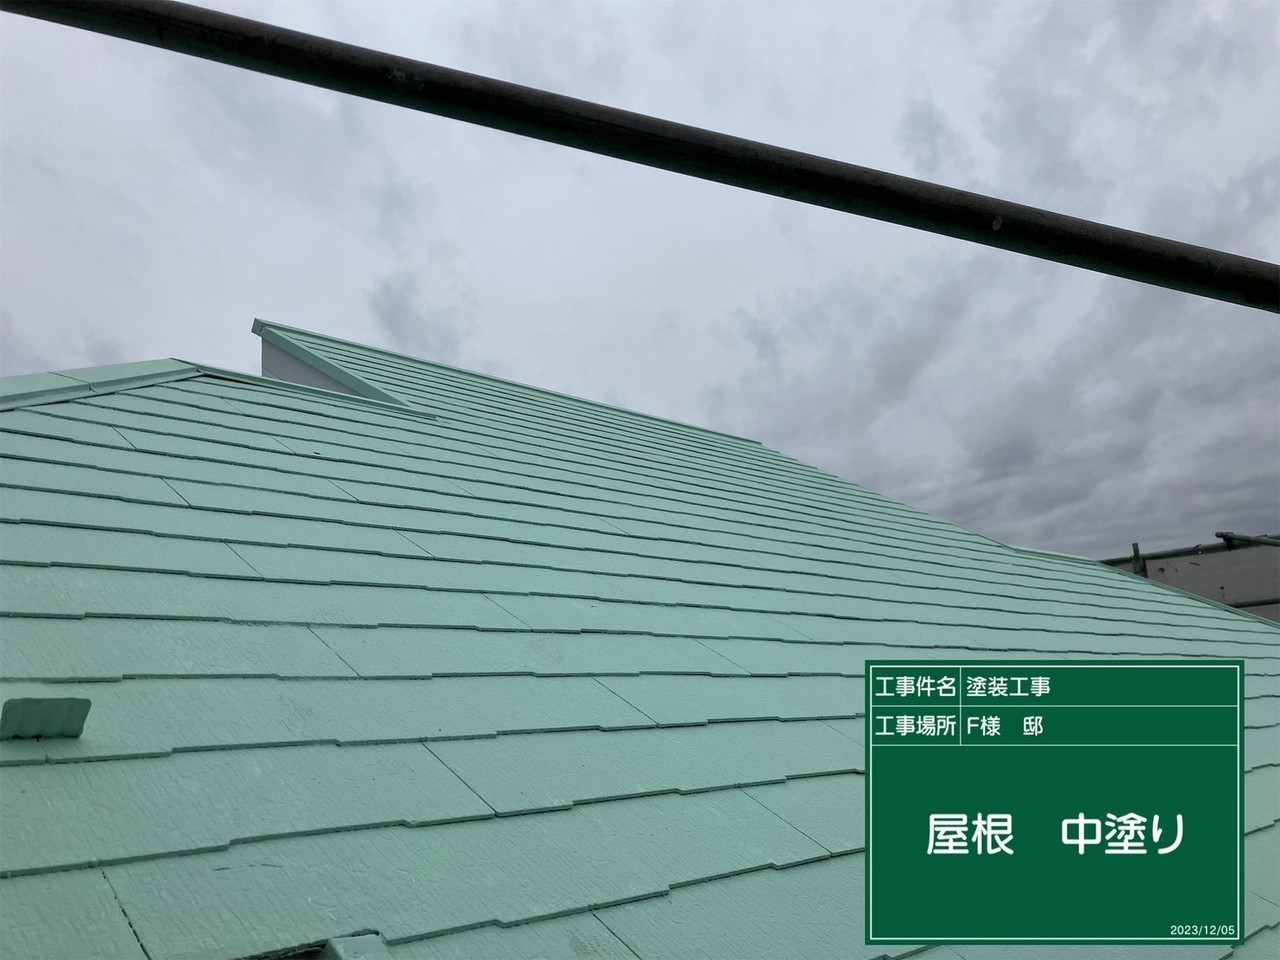 塗装中の屋根